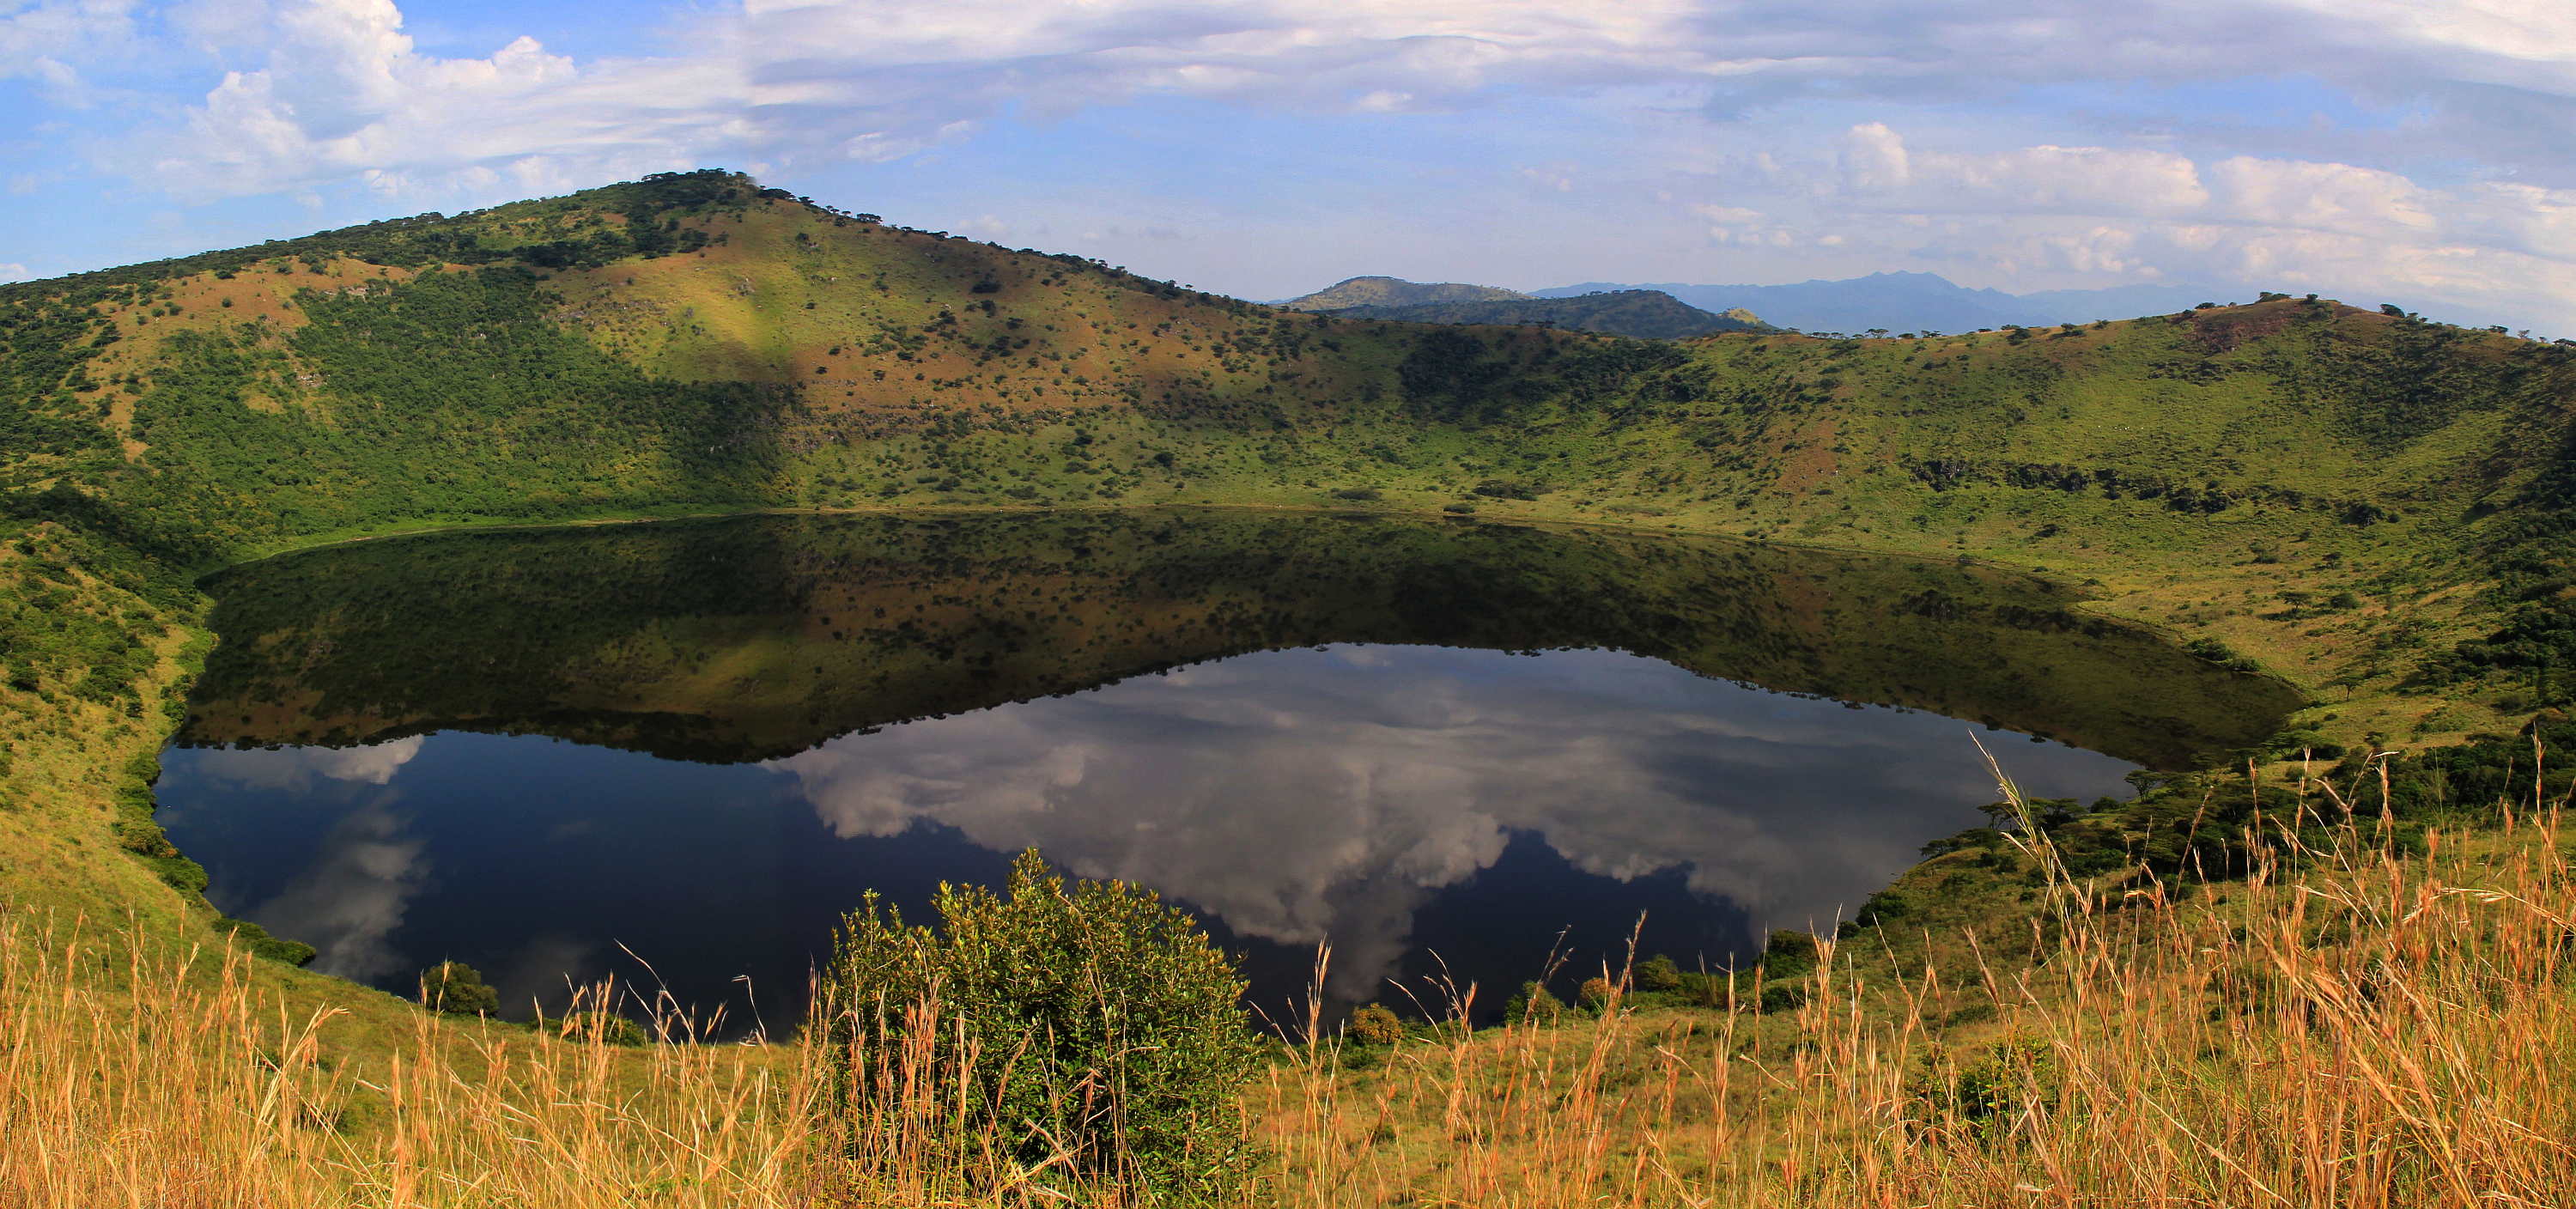 ウガンダの人気観光スポットクイーンエリザベス国立公園でサファリや少数民族に出会う旅